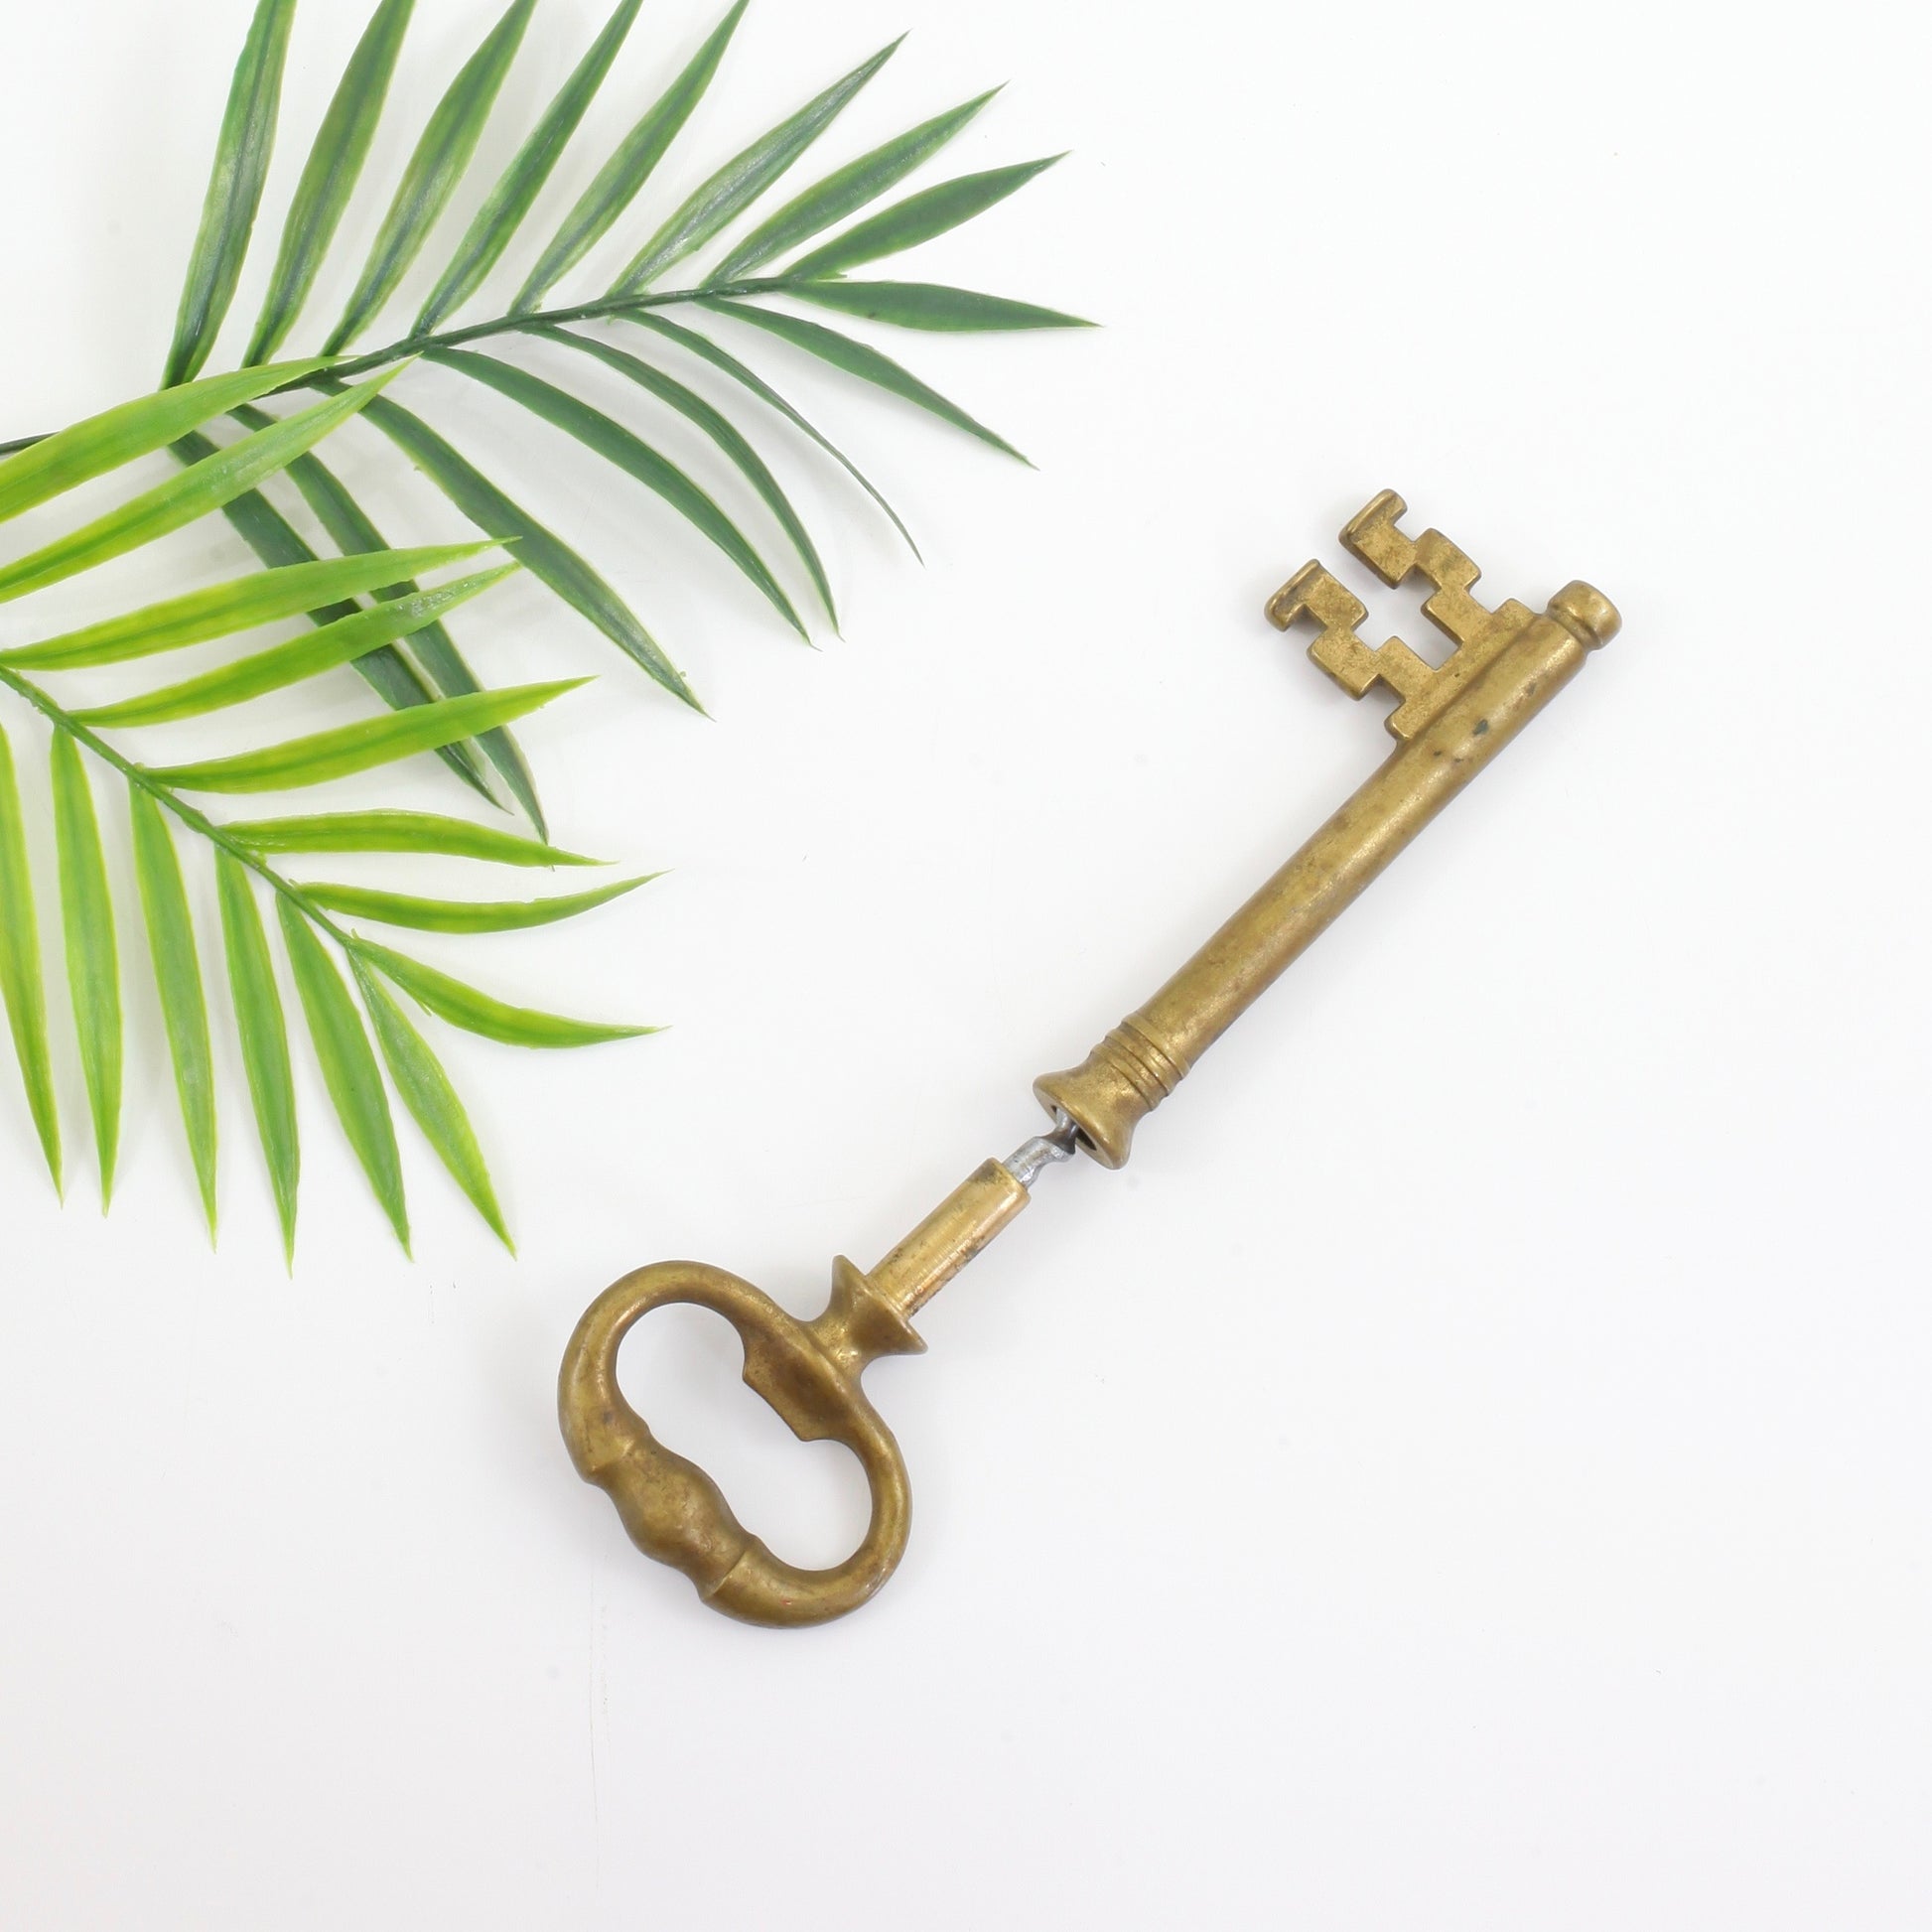 Brass skeleton Key corkscrew vintage 5 inches – Prices $US